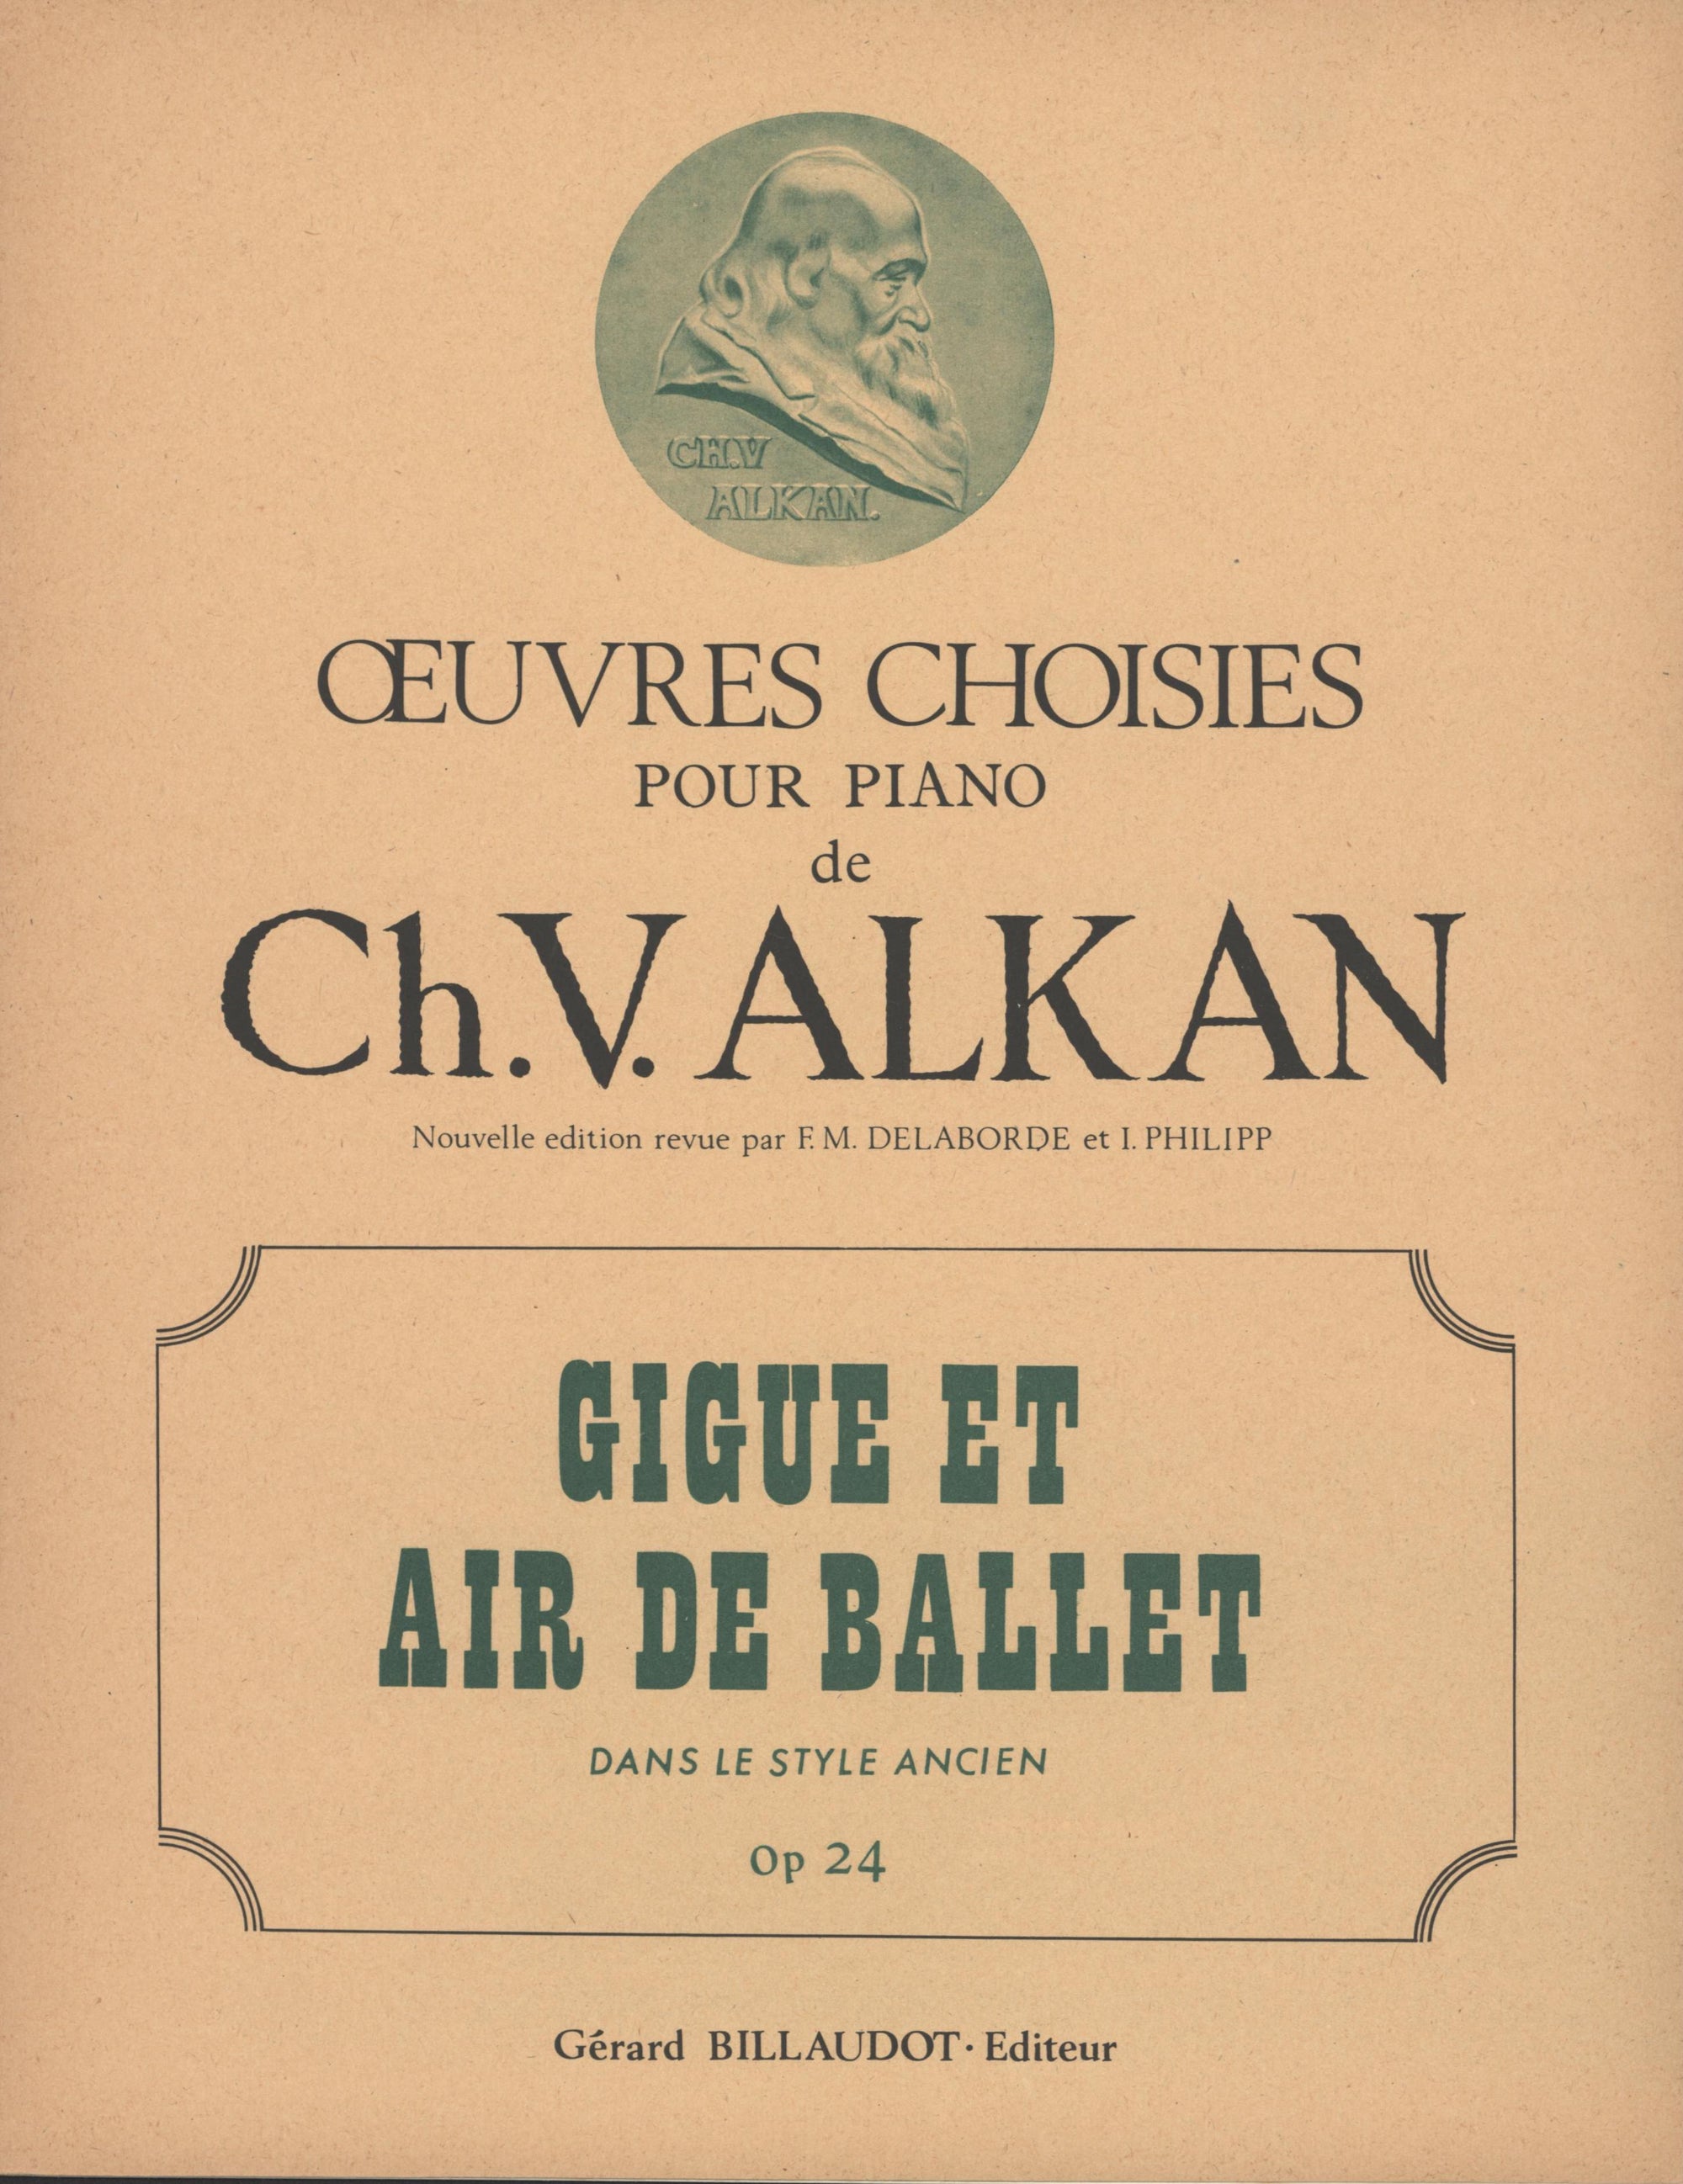 Alkan: Gigue et air de ballet, Op. 24